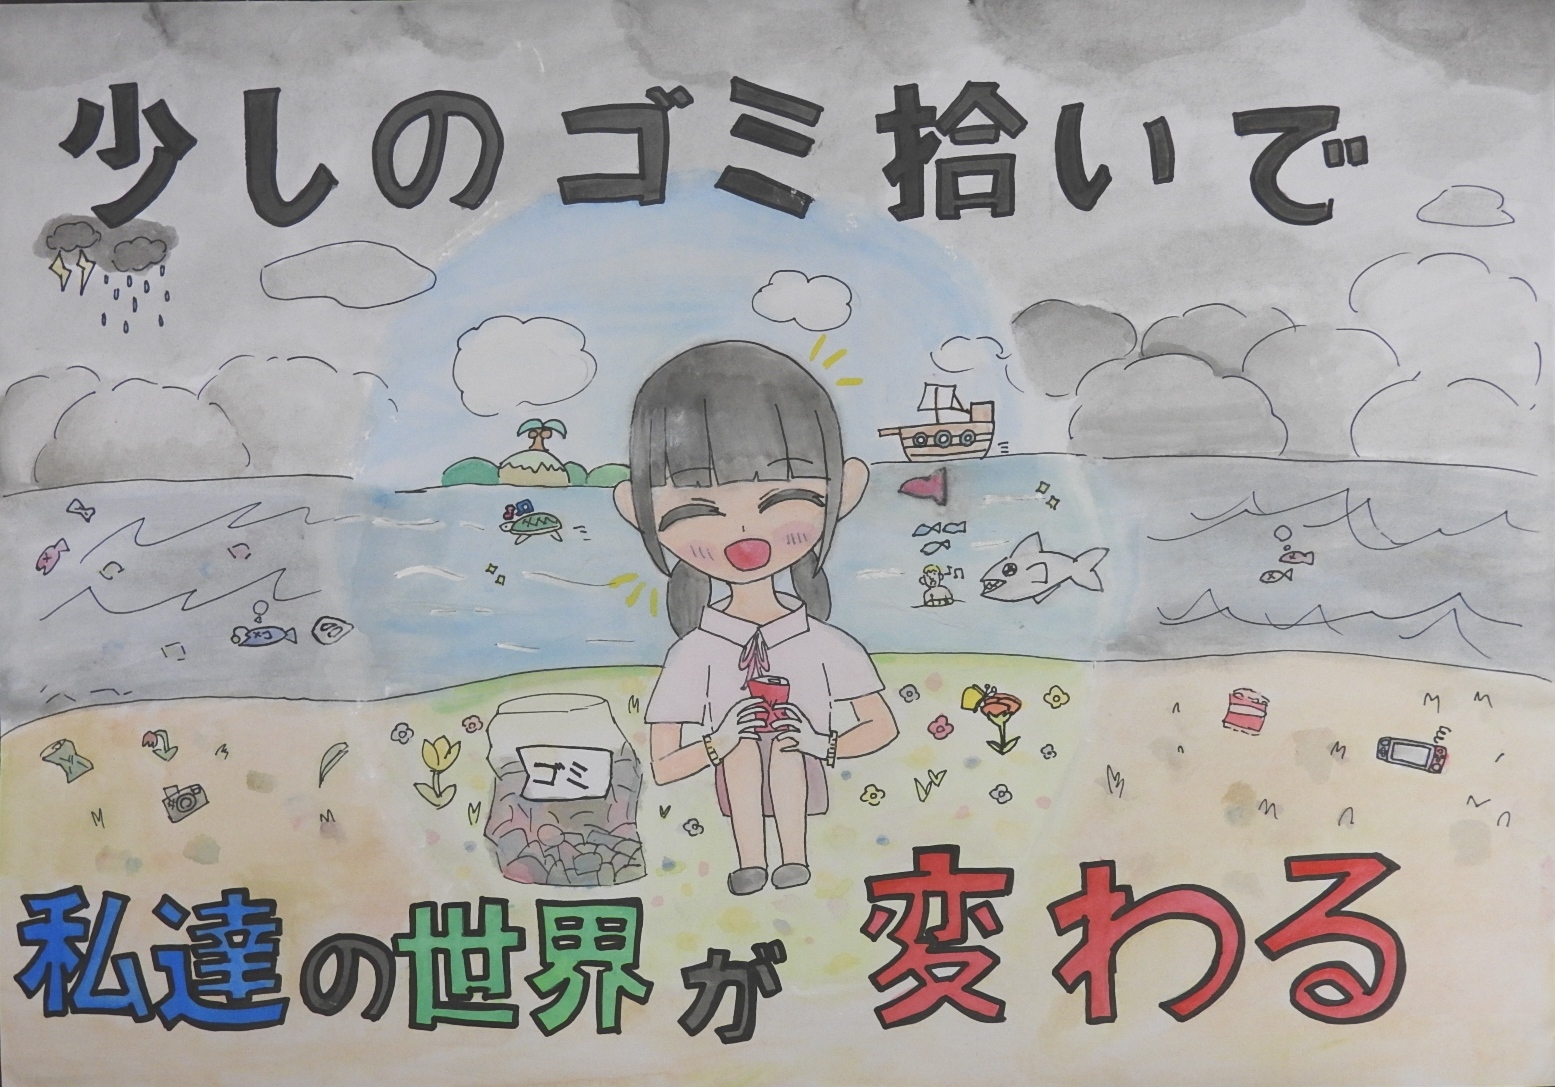 「少しのゴミ拾いで私達の世界が変わる」と書かれた、海辺のゴミを集めて笑顔になっている女子のポスター